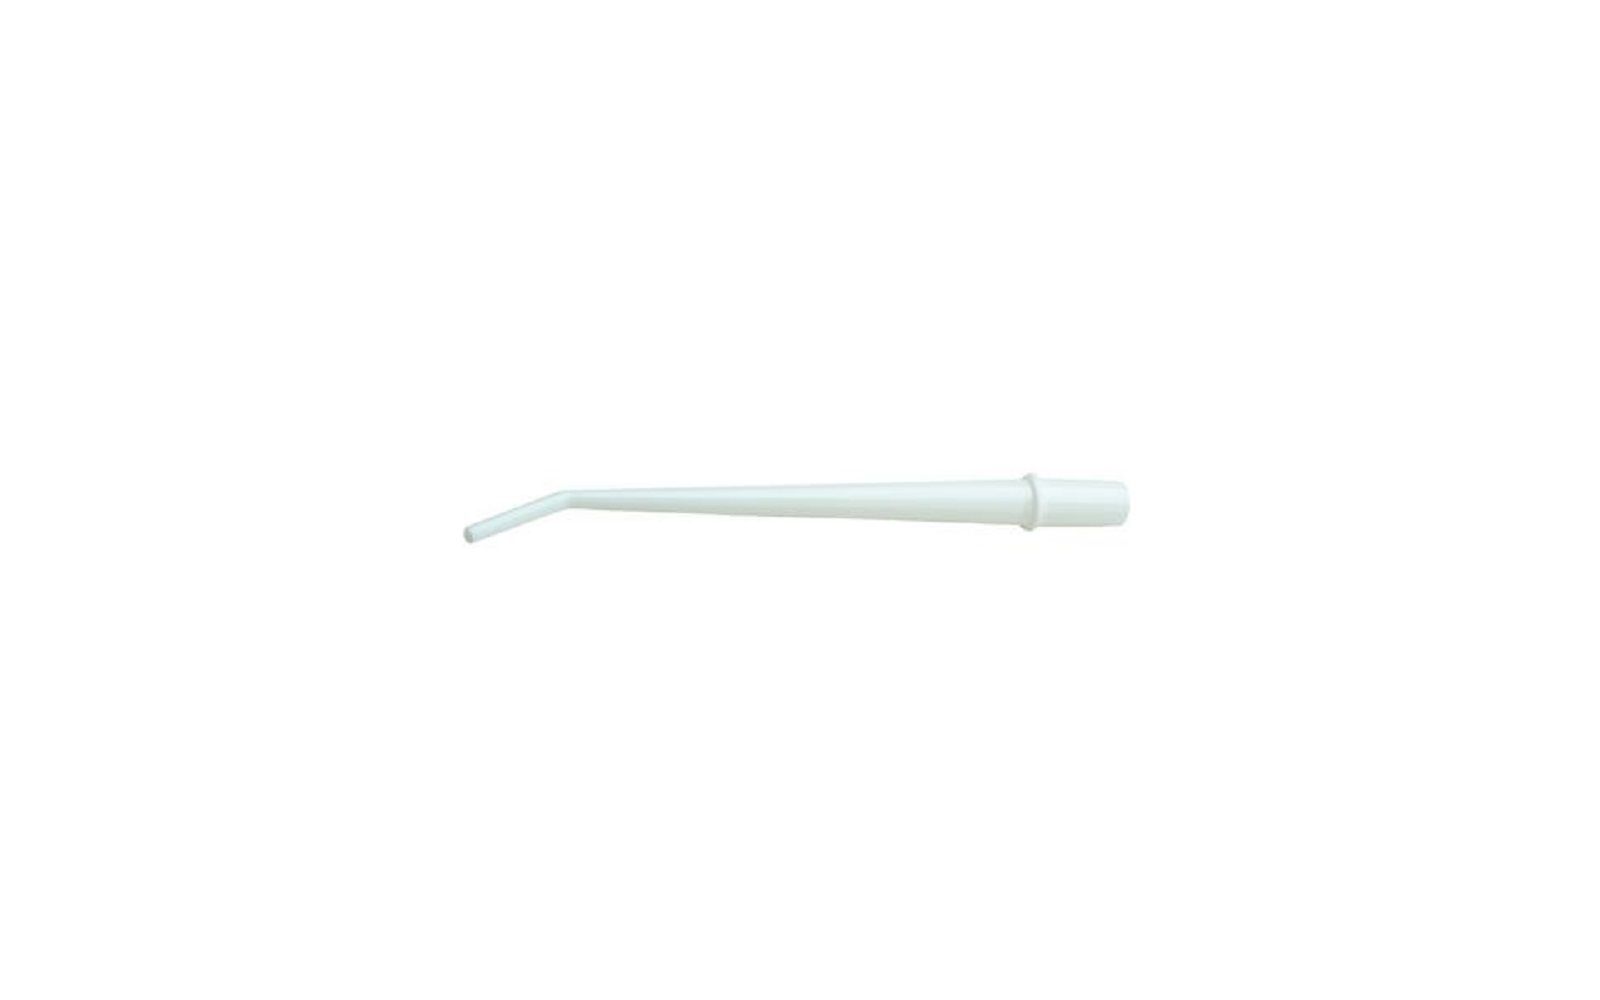 Vented surgical evacuation tubes – 1/8" diameter, 6" length, white, 25/pkg